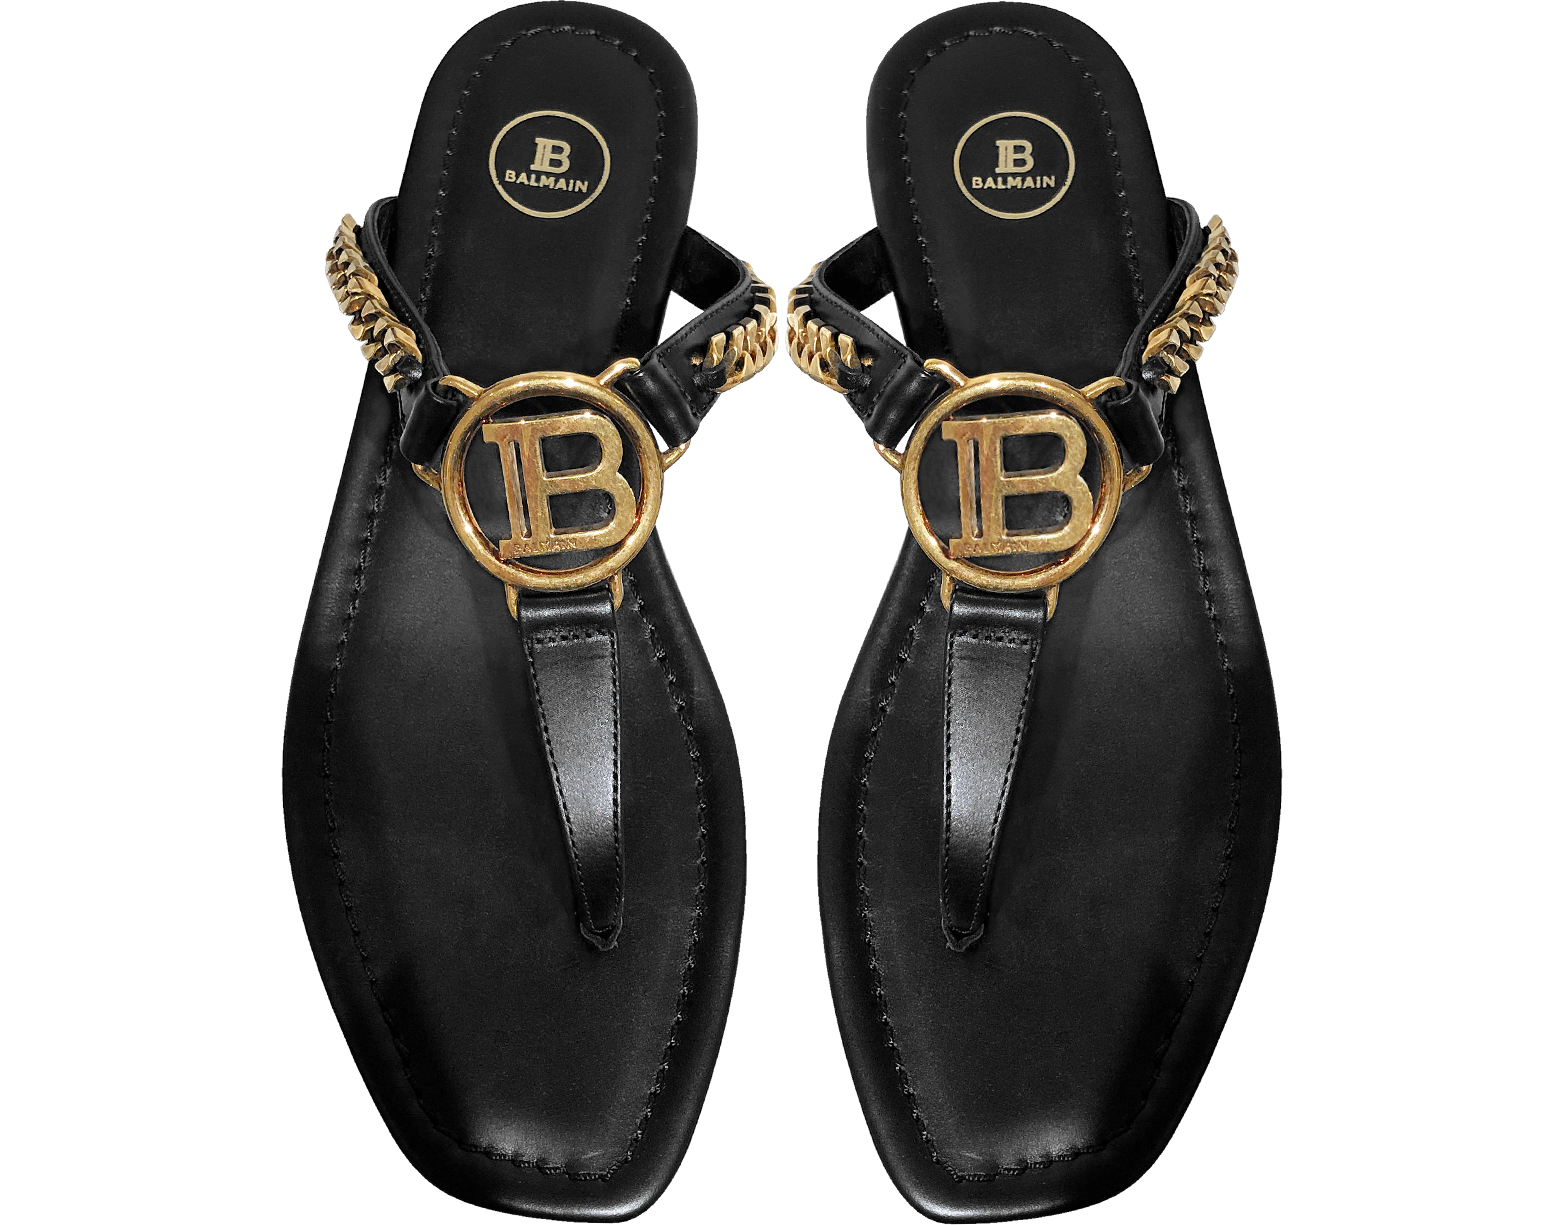 Balmain Black Leather T-Bar Flat Sandals 35 EU (5 US | 2 UK) at FORZIERI